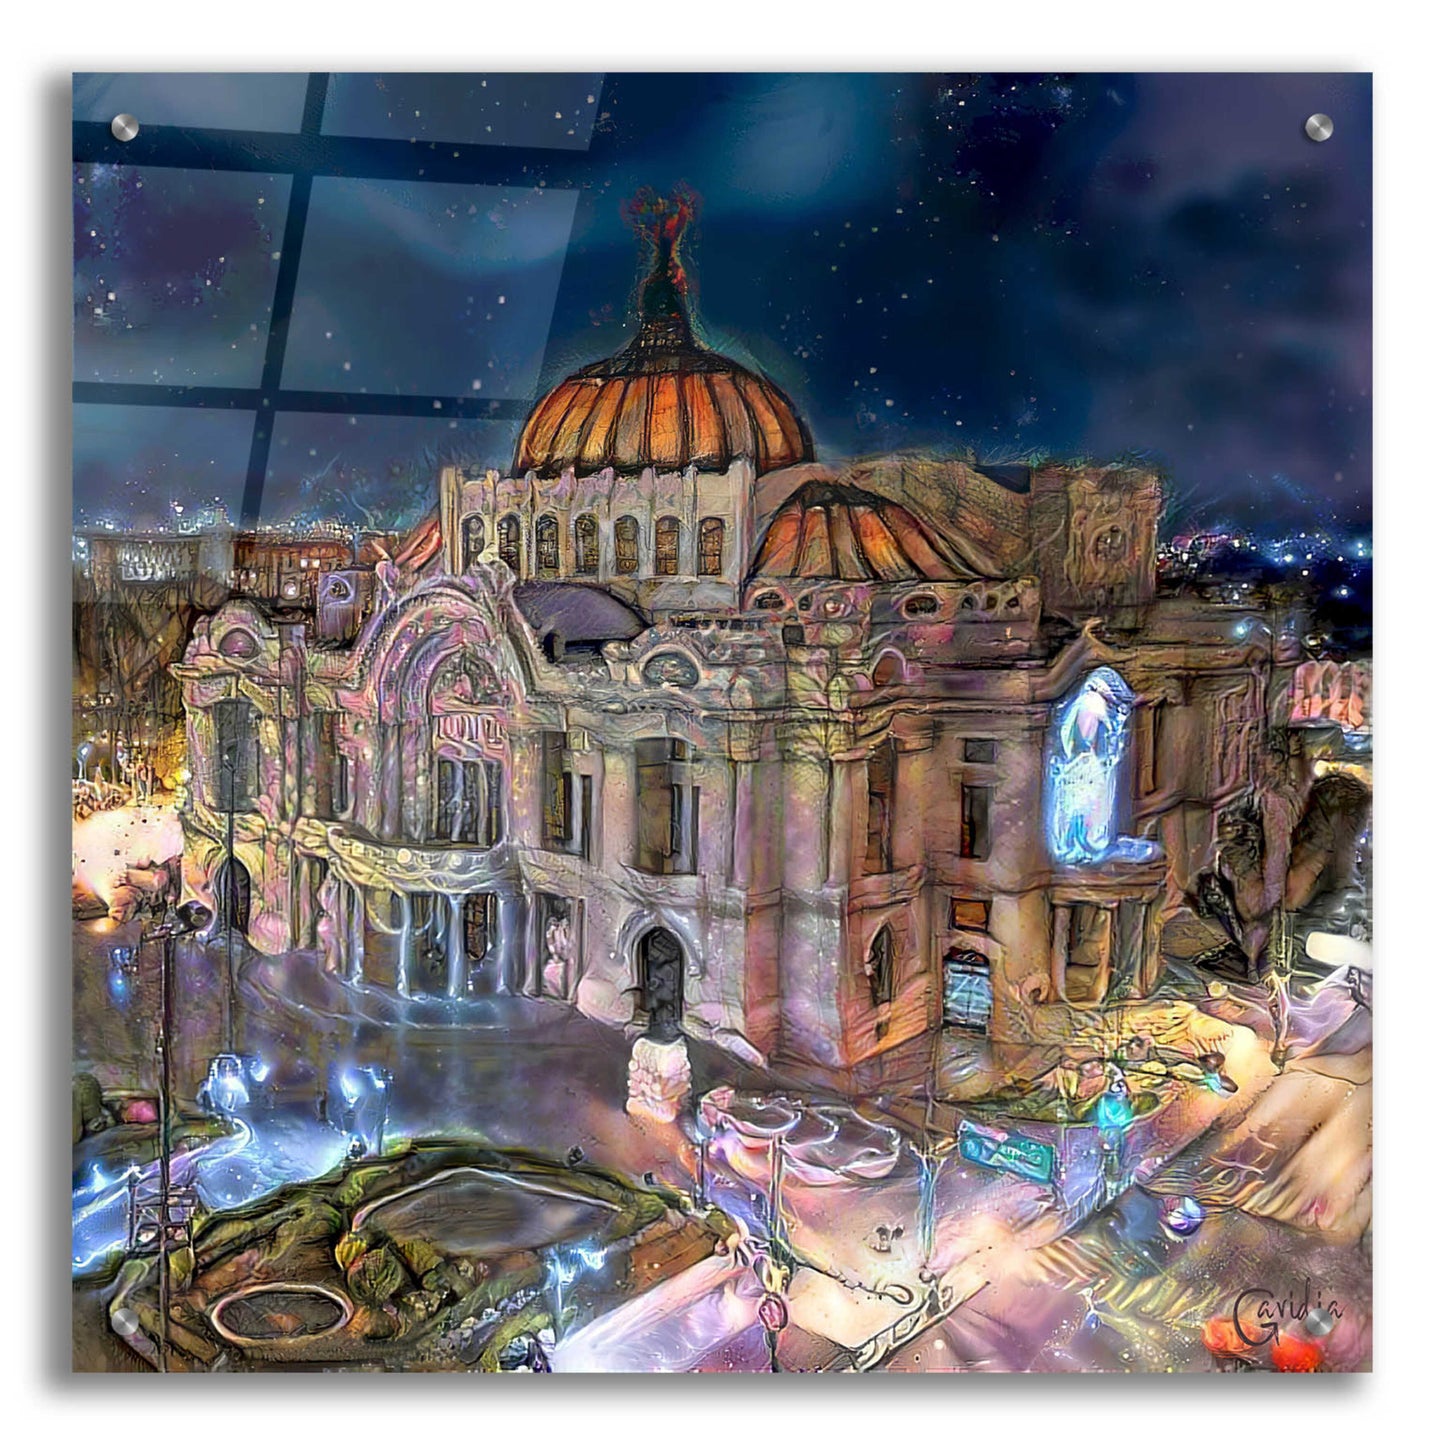 Epic Art 'Mexico City Palace of Fine Arts at night' by Pedro Gavidia, Acrylic Glass Wall Art,24x24